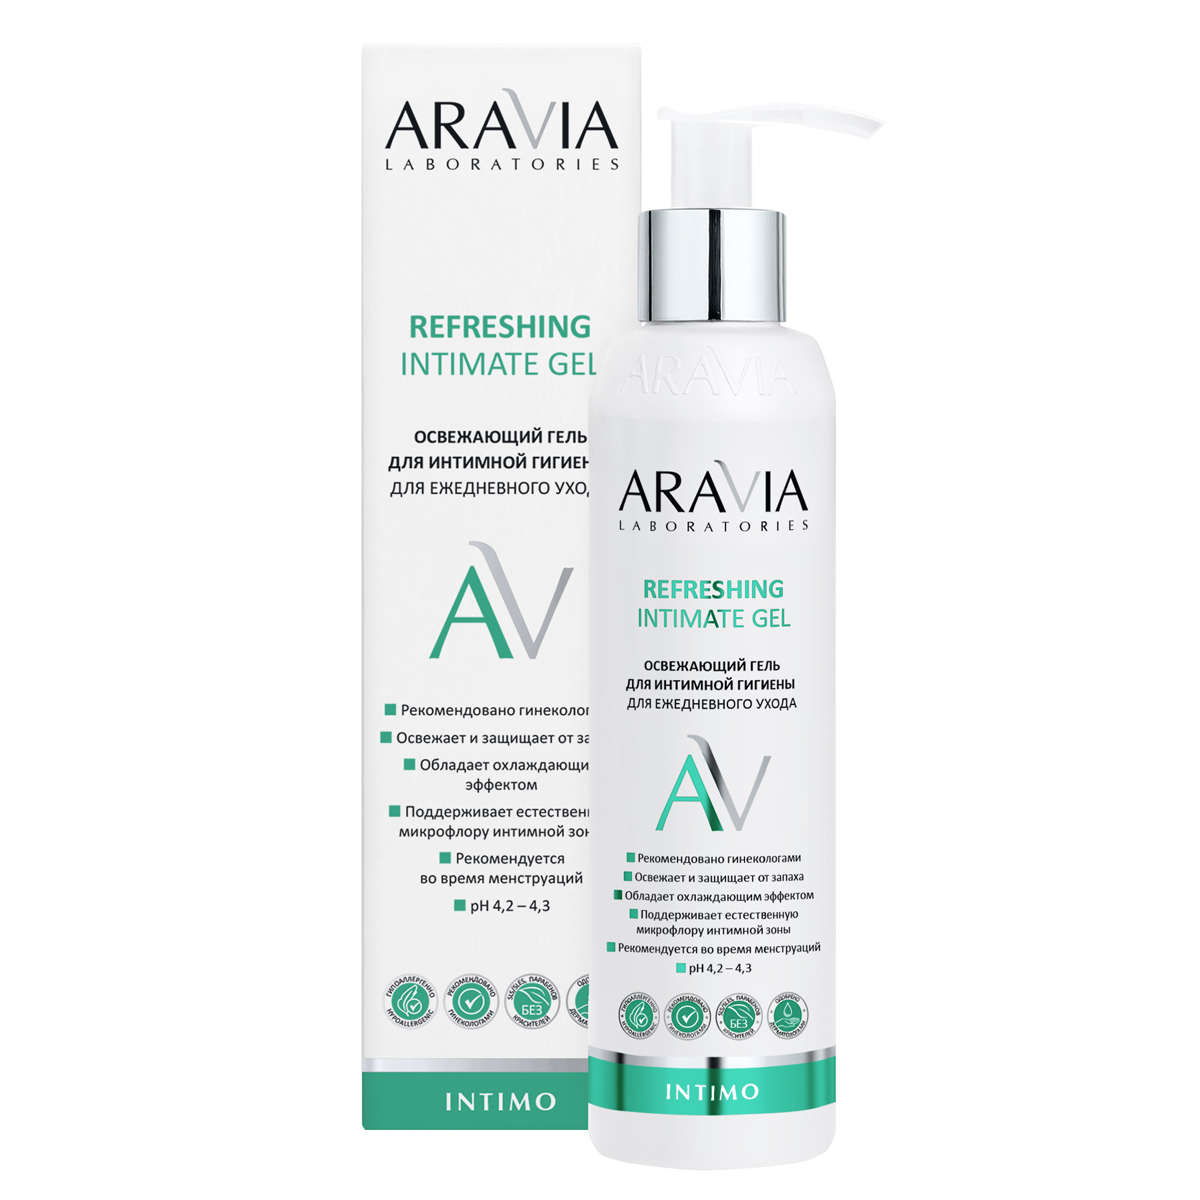 Aravia Laboratories Освежающий гель для интимной гигиены для ежедневного ухода Refreshing Intimate Gel, 200 мл (Aravia Laboratories, Уход за телом)